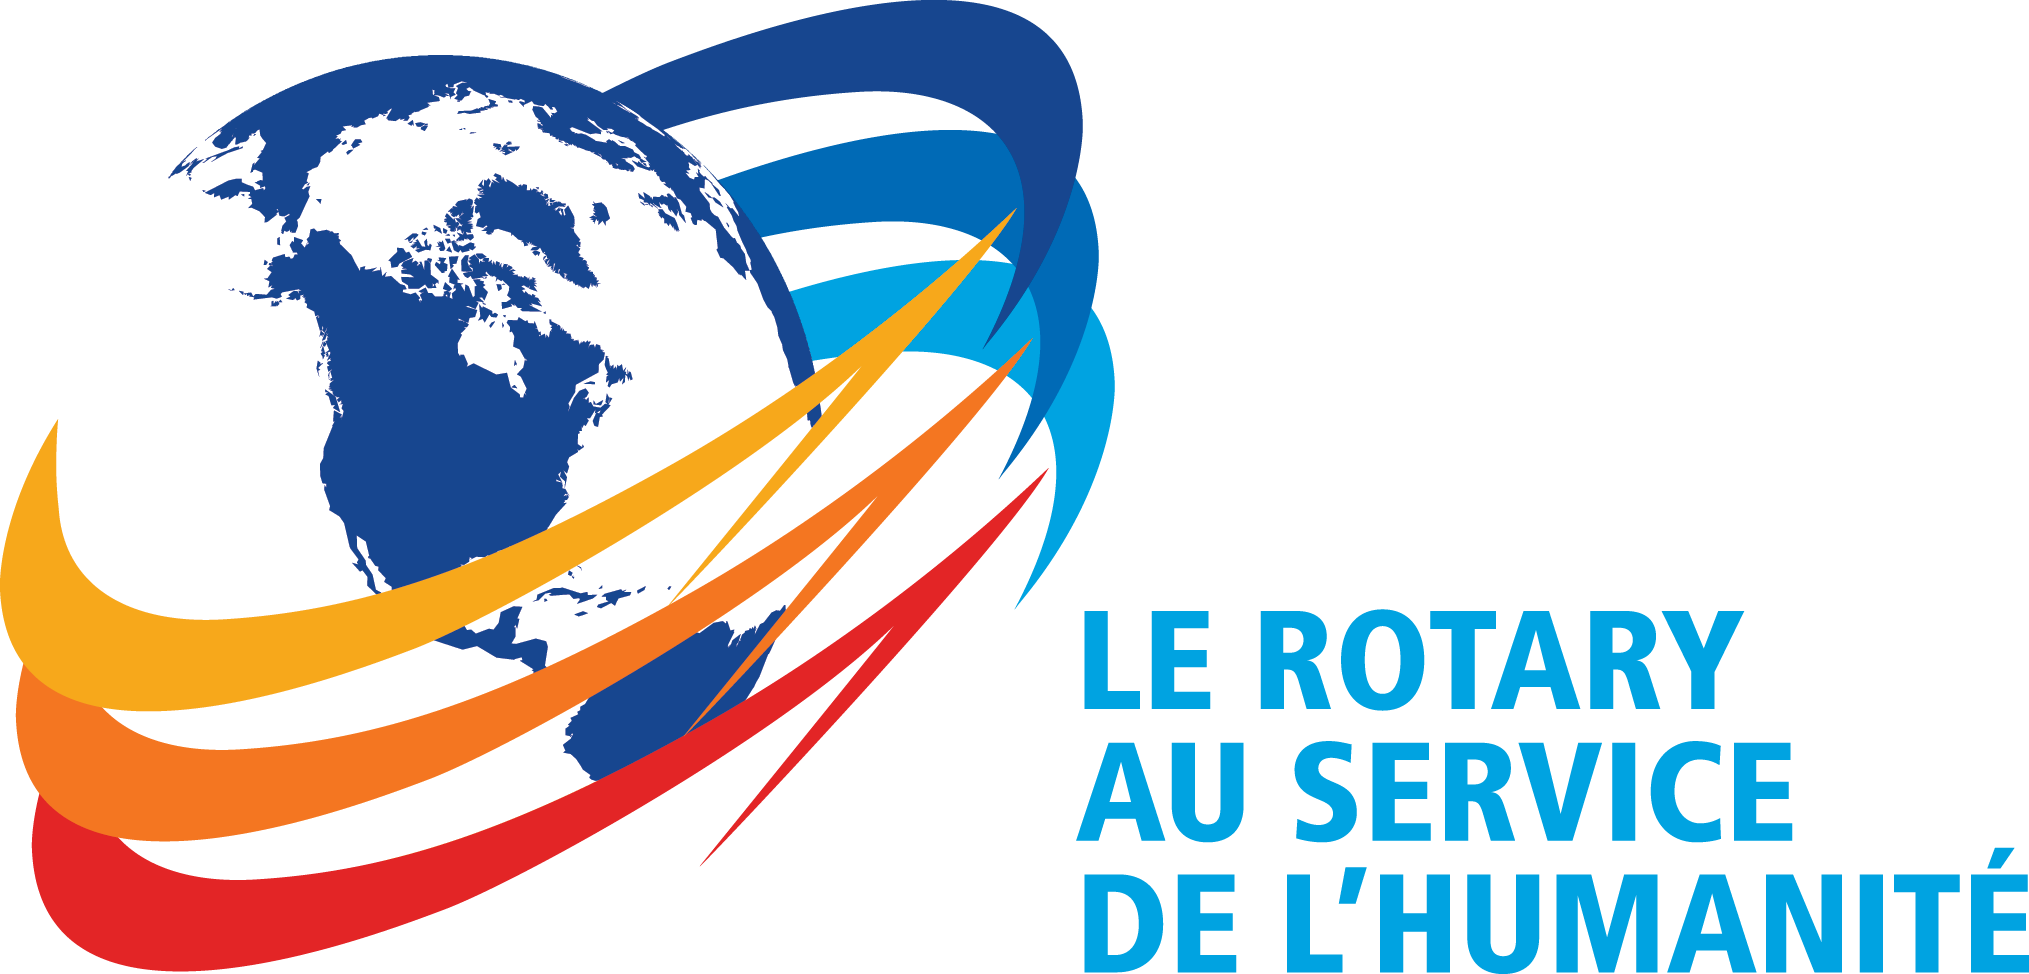 Le Rotary au service de l'humanité